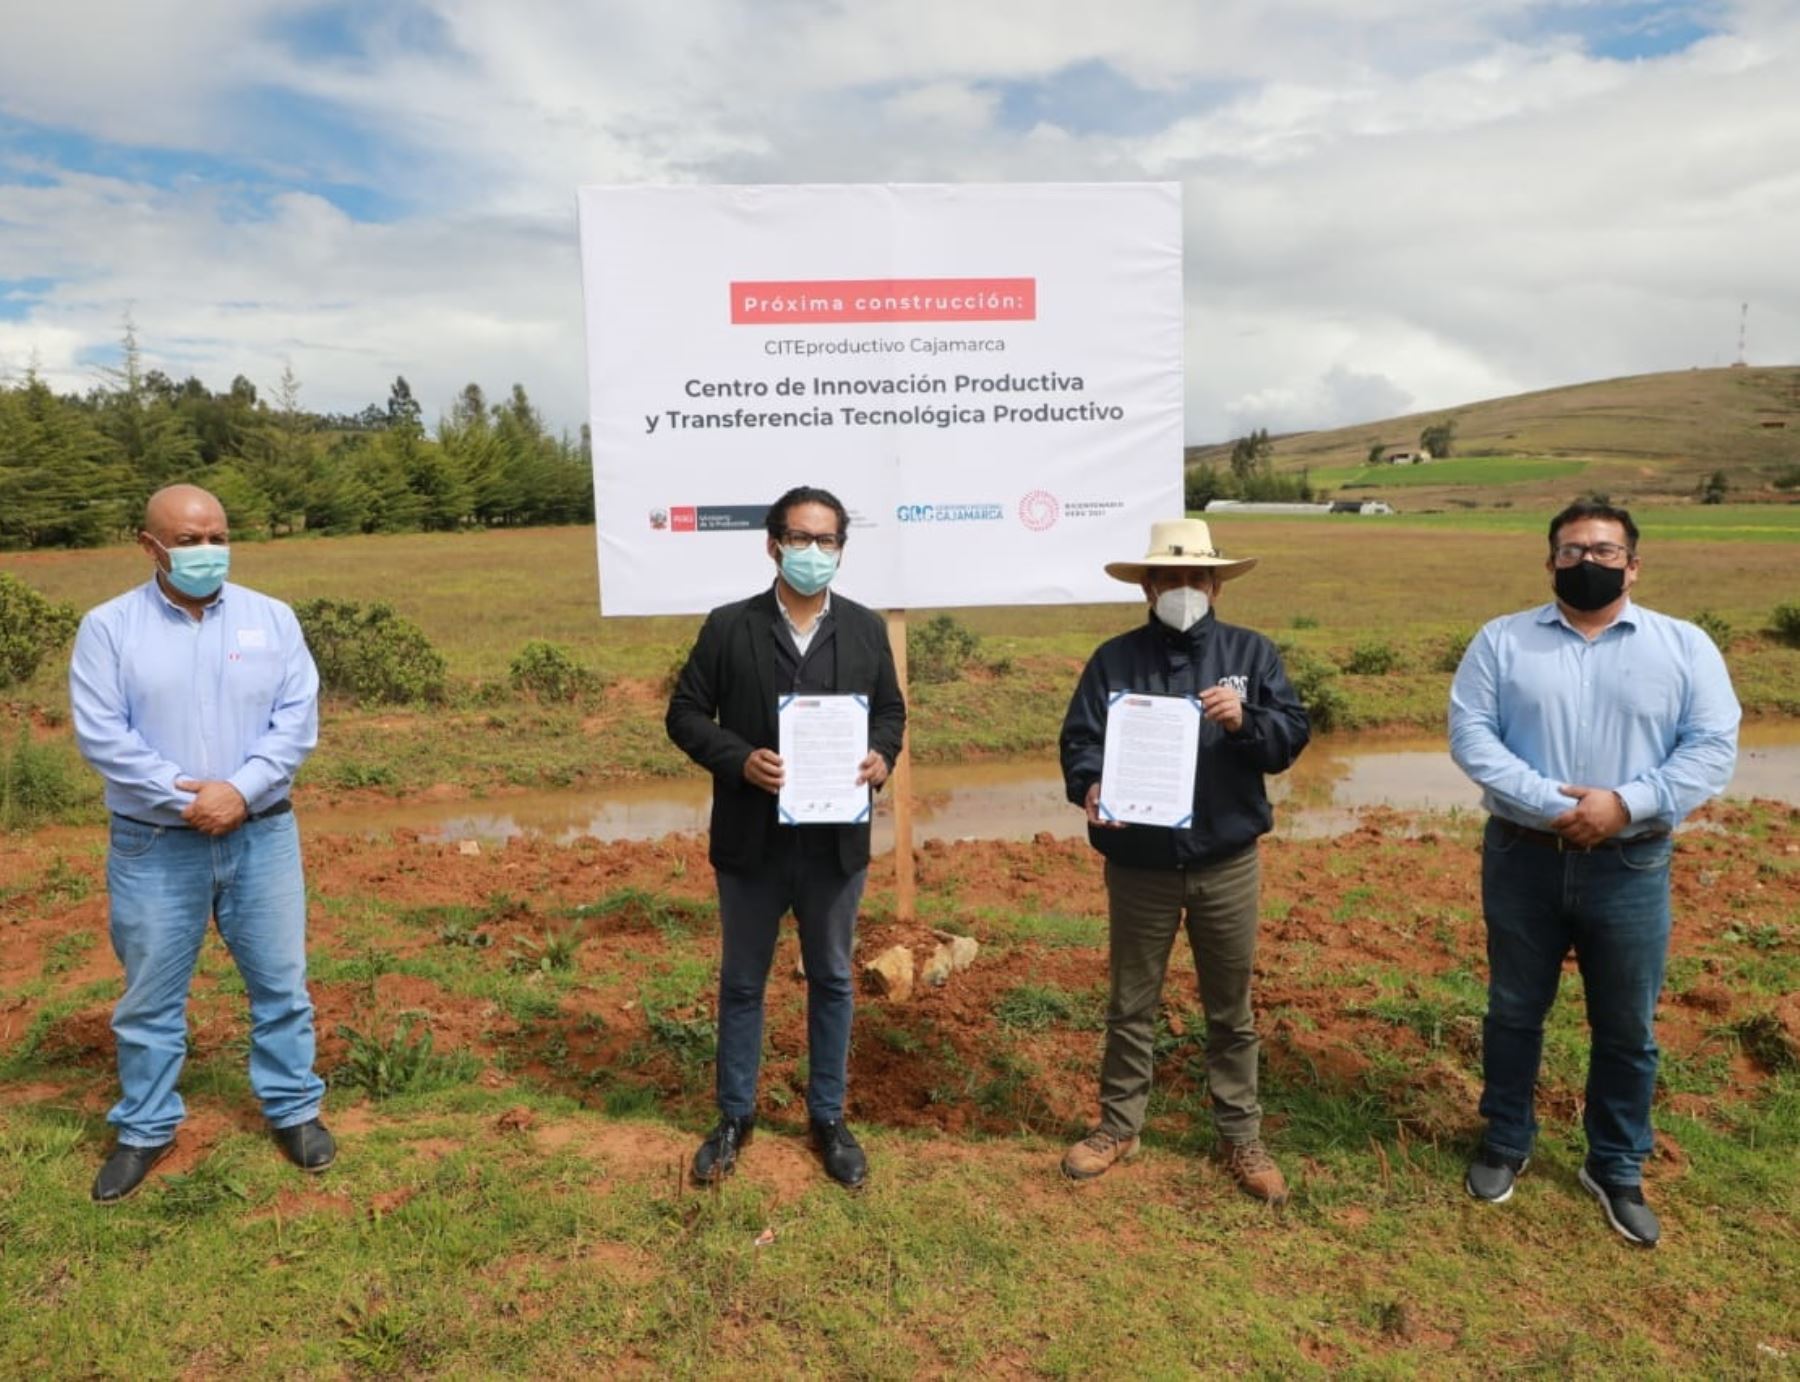 El ministro de la Producción, José Luis Chicoma, encabezó en Cajamarca la ceremonia de entrega del terreno donde se construirá un CITE productivo que impulsará el sector forestal y la industria láctea de esa región.